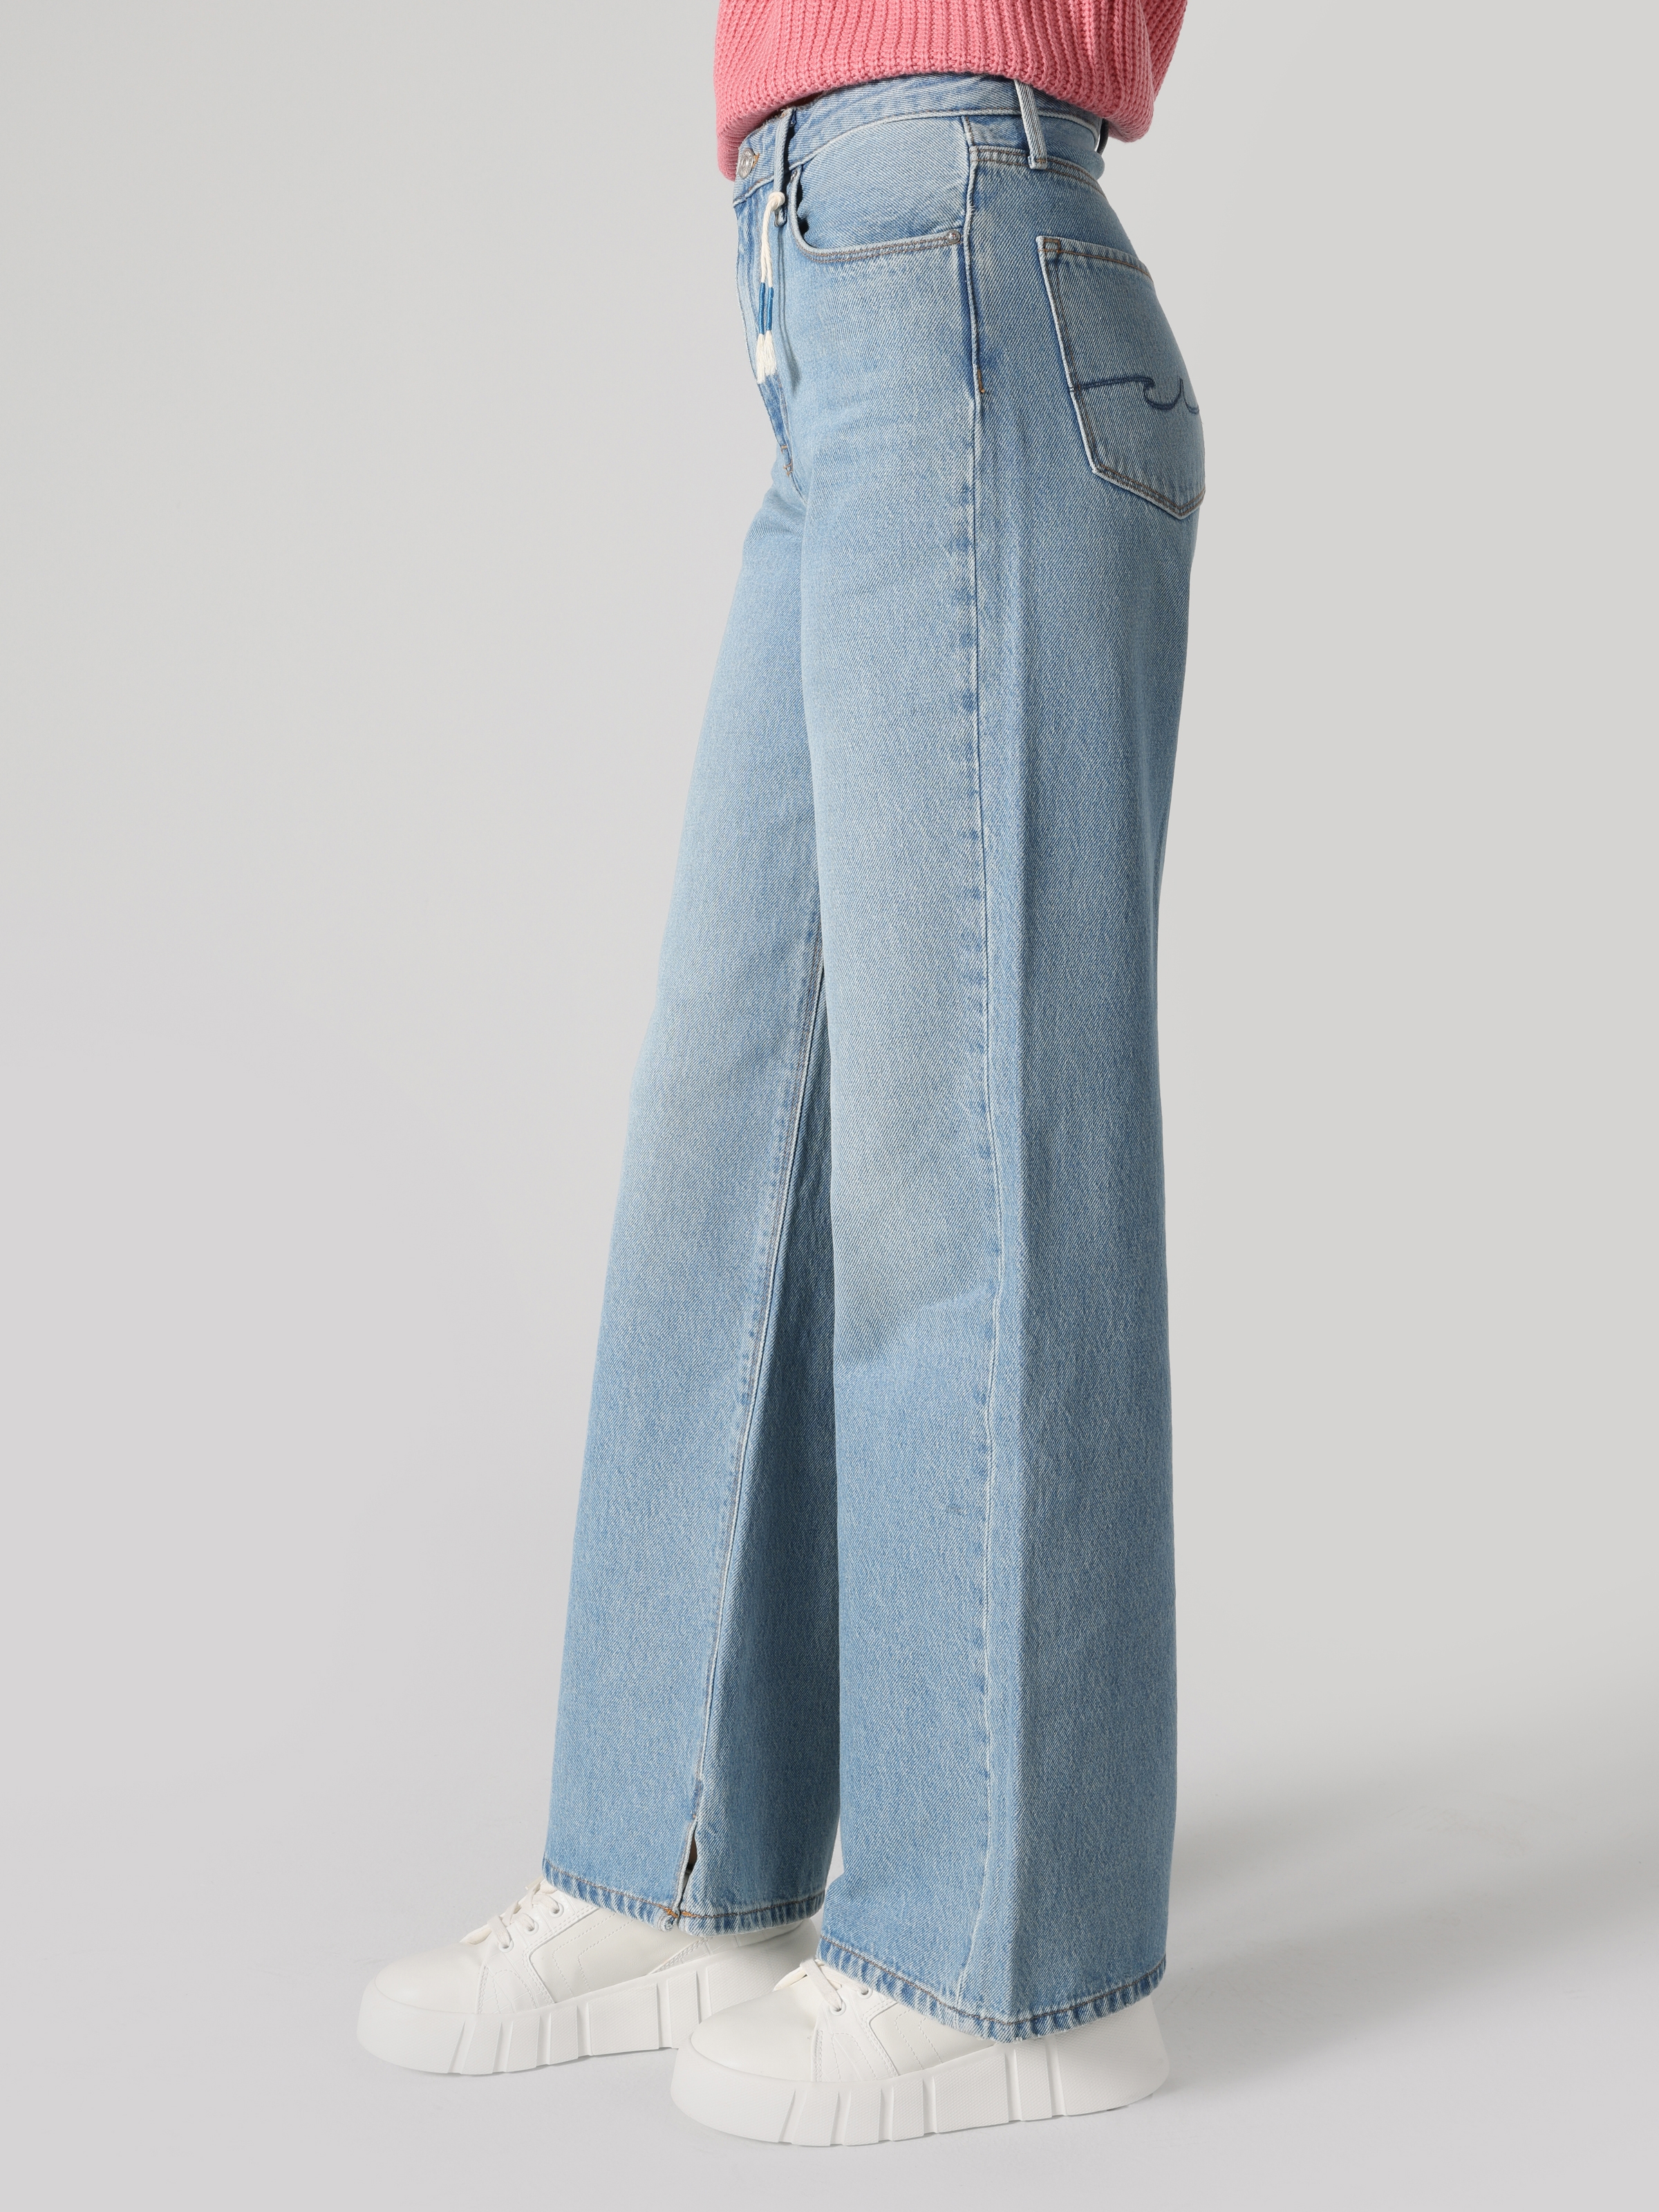 Afficher les détails de Pantalon Femme 970 Berry Regular Fit Taille Haute Jambe Large Bleu